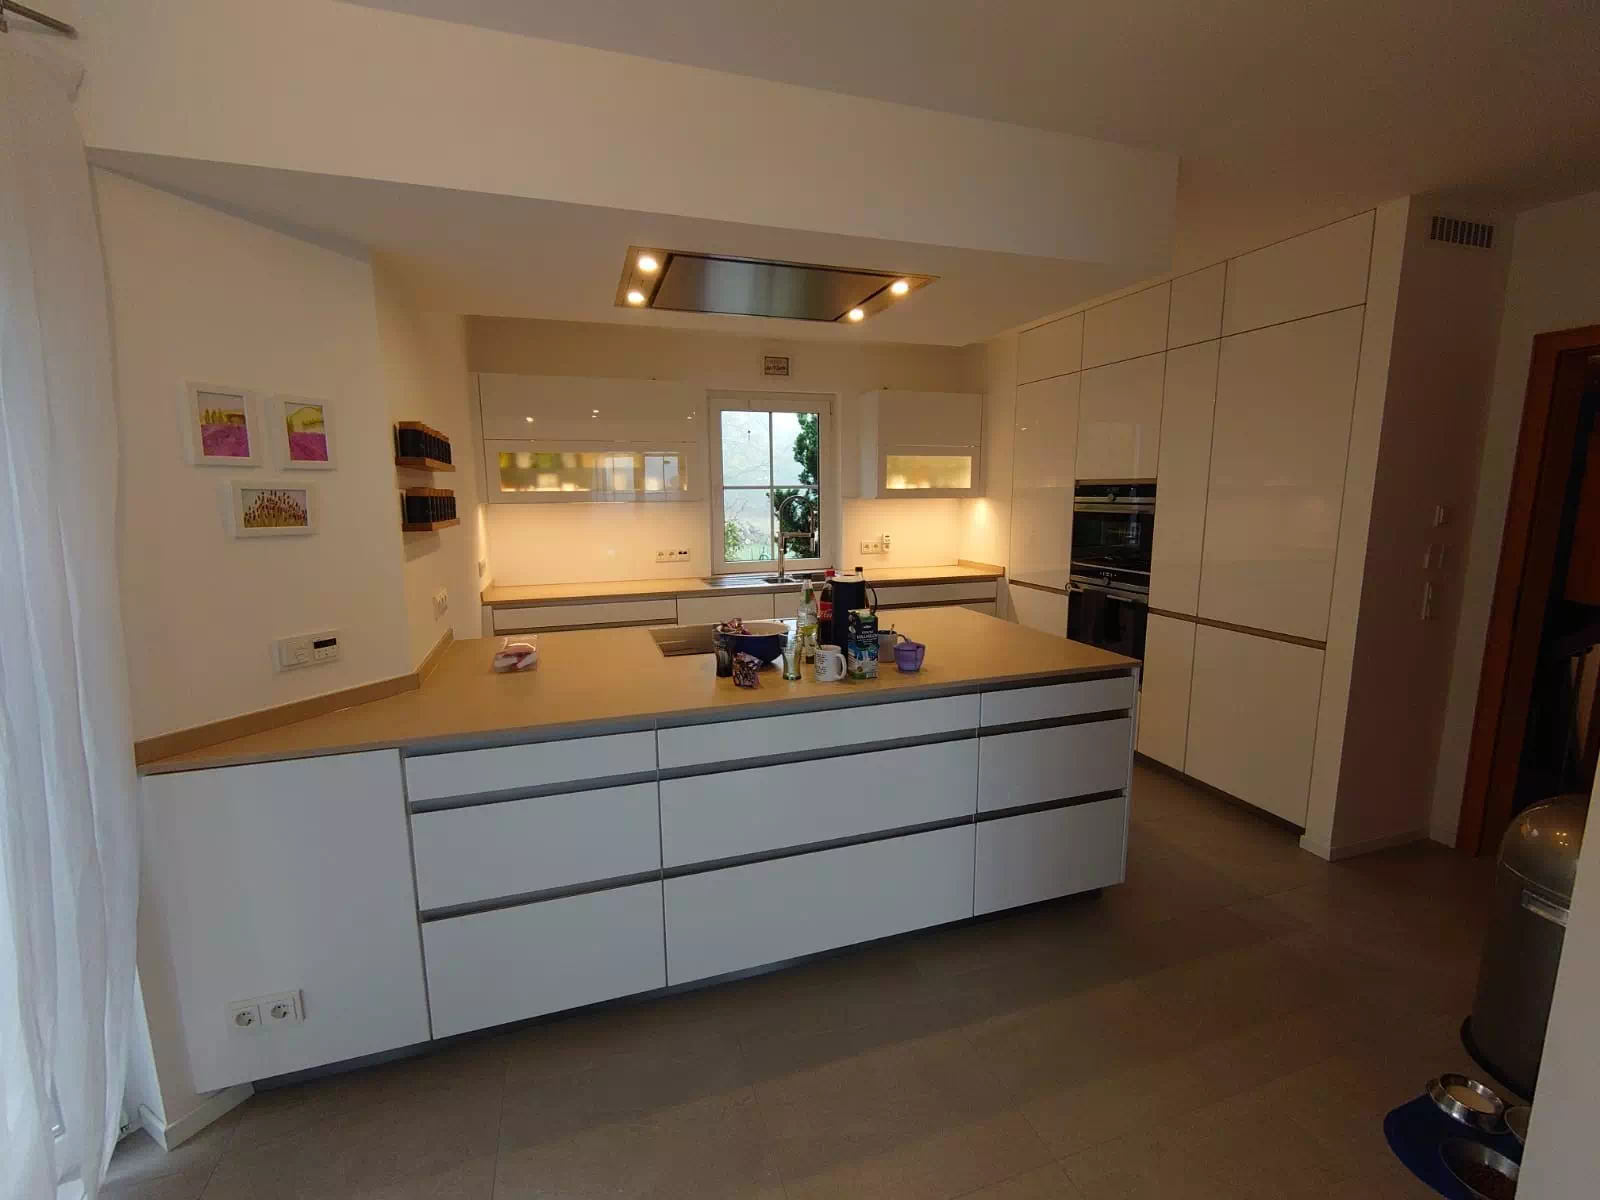 Moderne, weiße Küche mit hellbrauner Arbeitsplatte in wohligem, warmen Licht